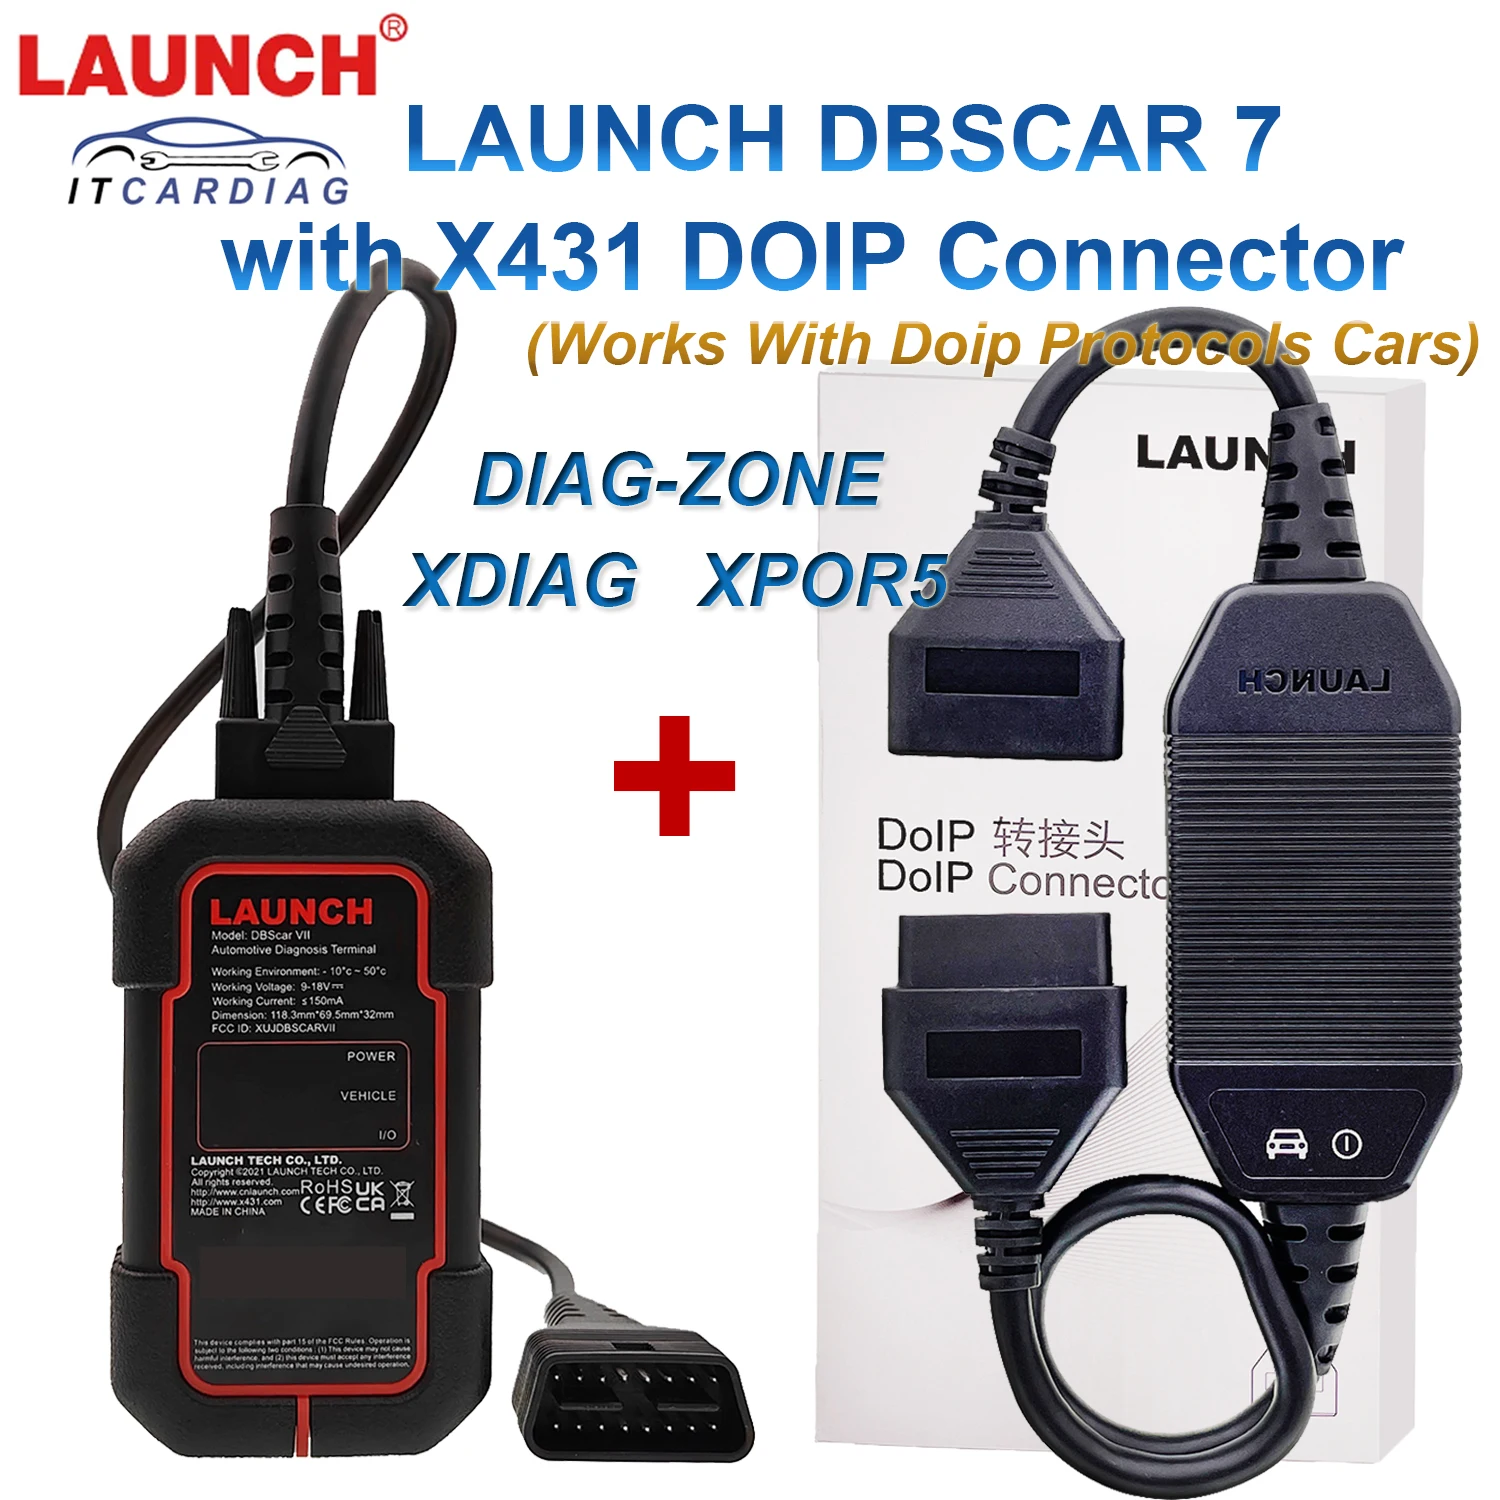 Запуск кабеля DOIP С Разъемом DIOP 16Pin Adapter и DBScar7 DBScar 7 DBScar VII Работа С Протоколами DIOP Поддержка автомобилей XPOR5 XDIAG